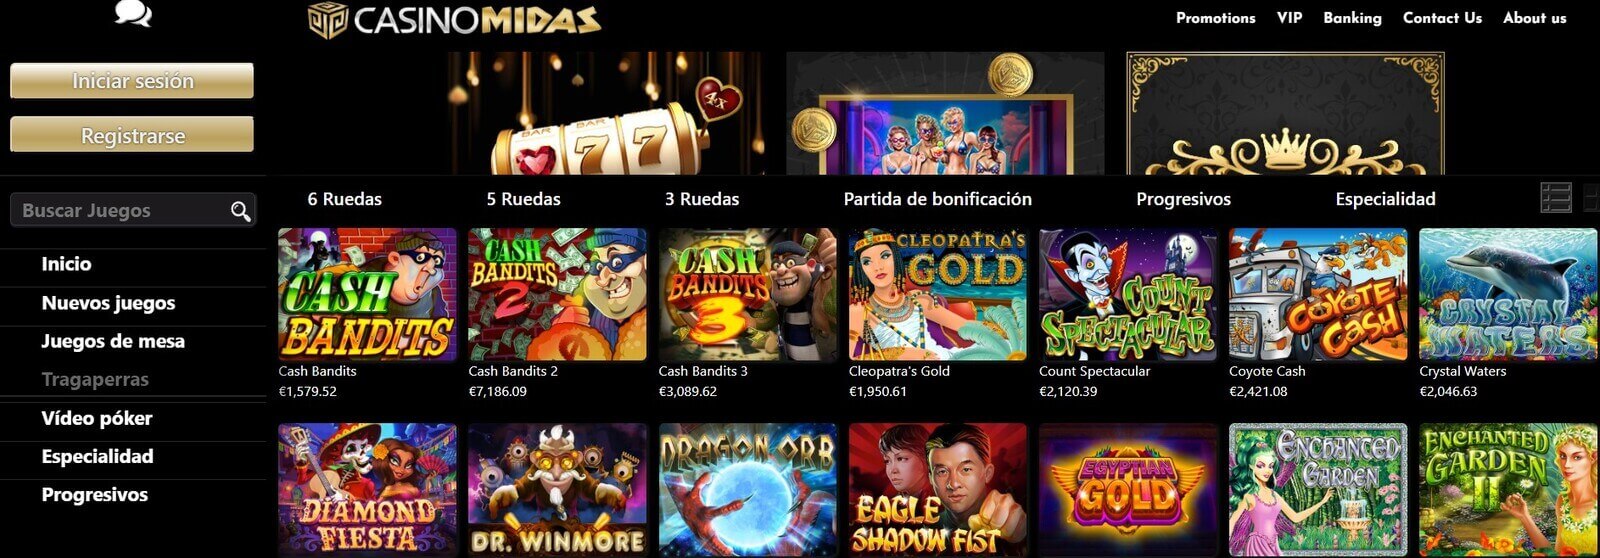 Tragaperras en Casino Midas online en Paraguay